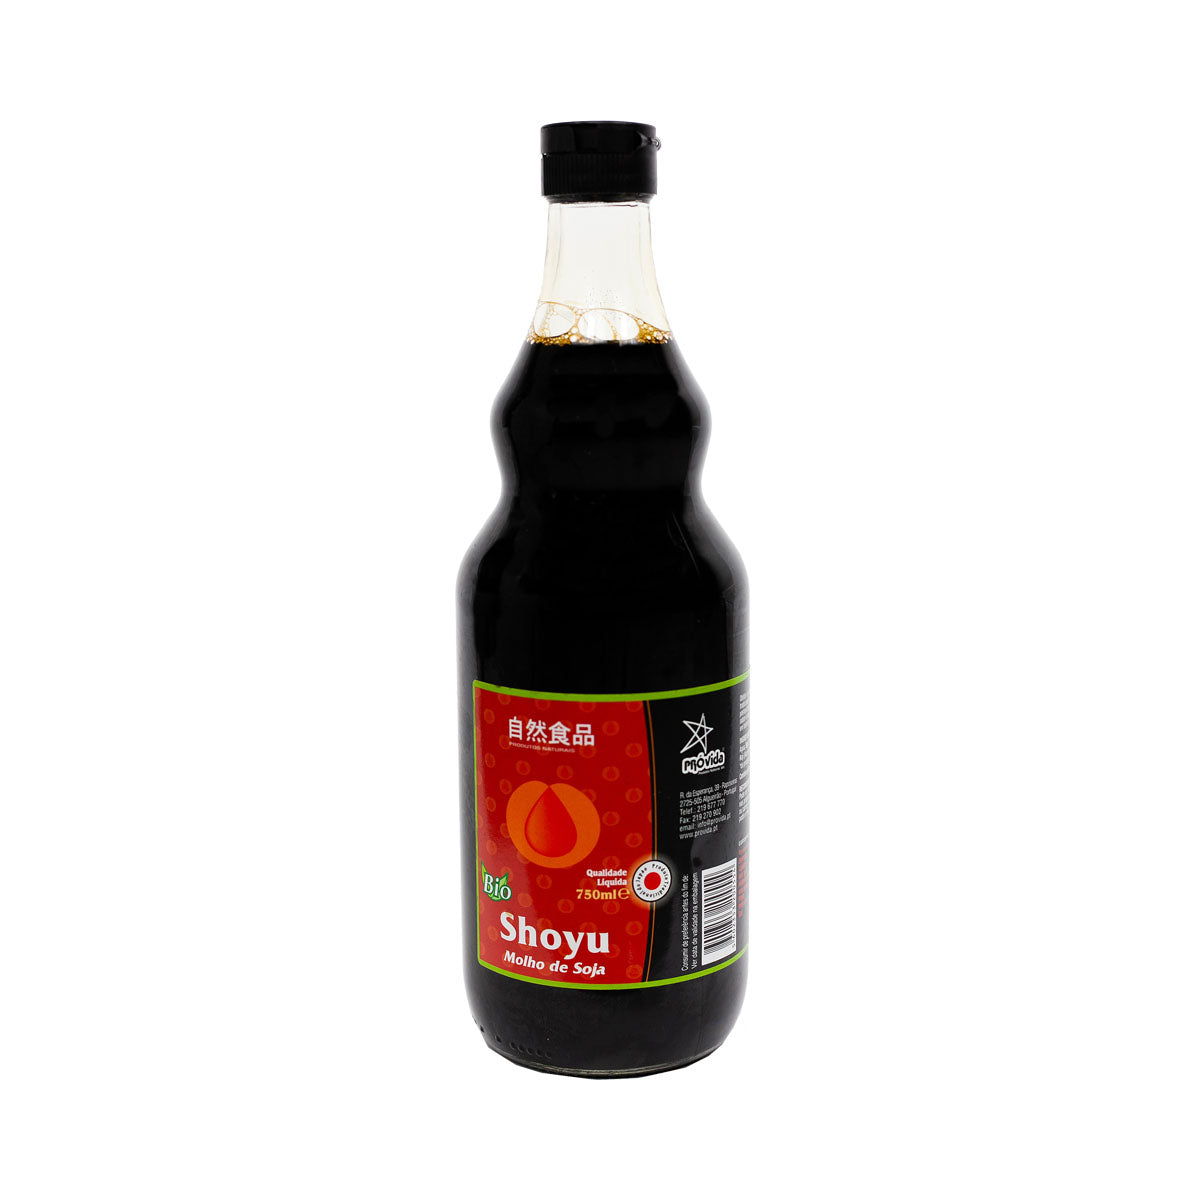 Shoyu - Molho de Soja BIO 750 ml - Go Natural